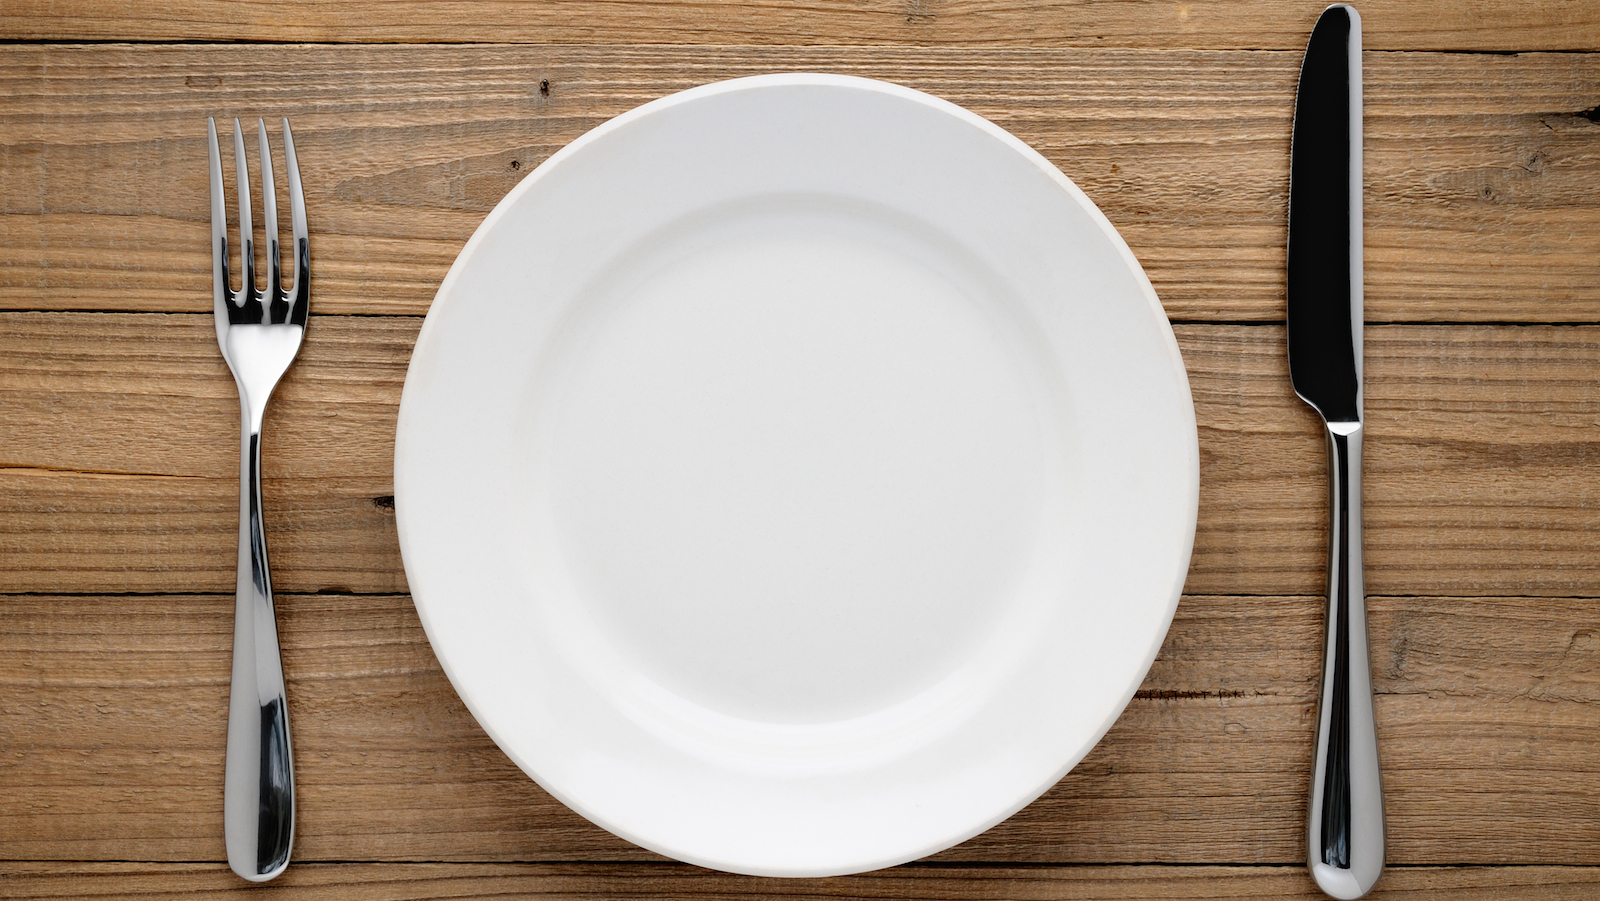 Лишняя тарелка на столе. Пустая тарелка с вилкой и ножом. Тарелка вилка нож. Пустая тарелка с вилкой. Тарелка сверху.